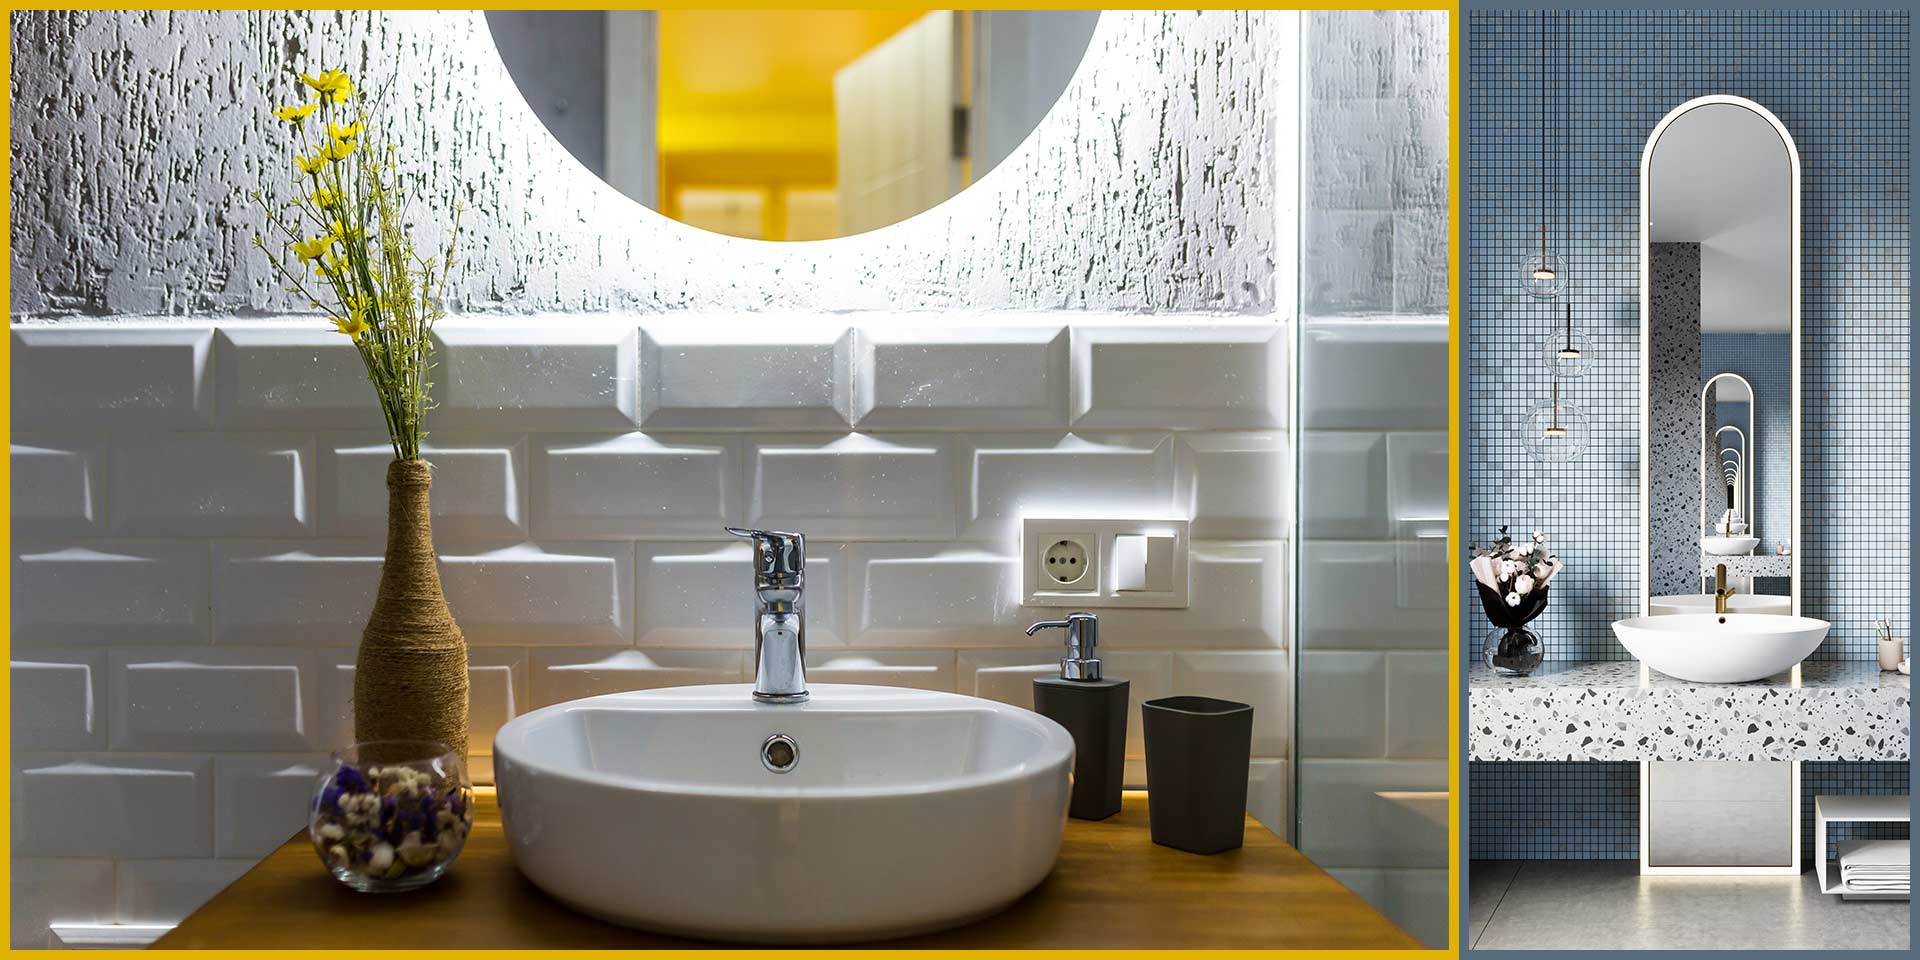 Primeri kupatislke dekorativne i viseće rasvete u modernim kupatilima.